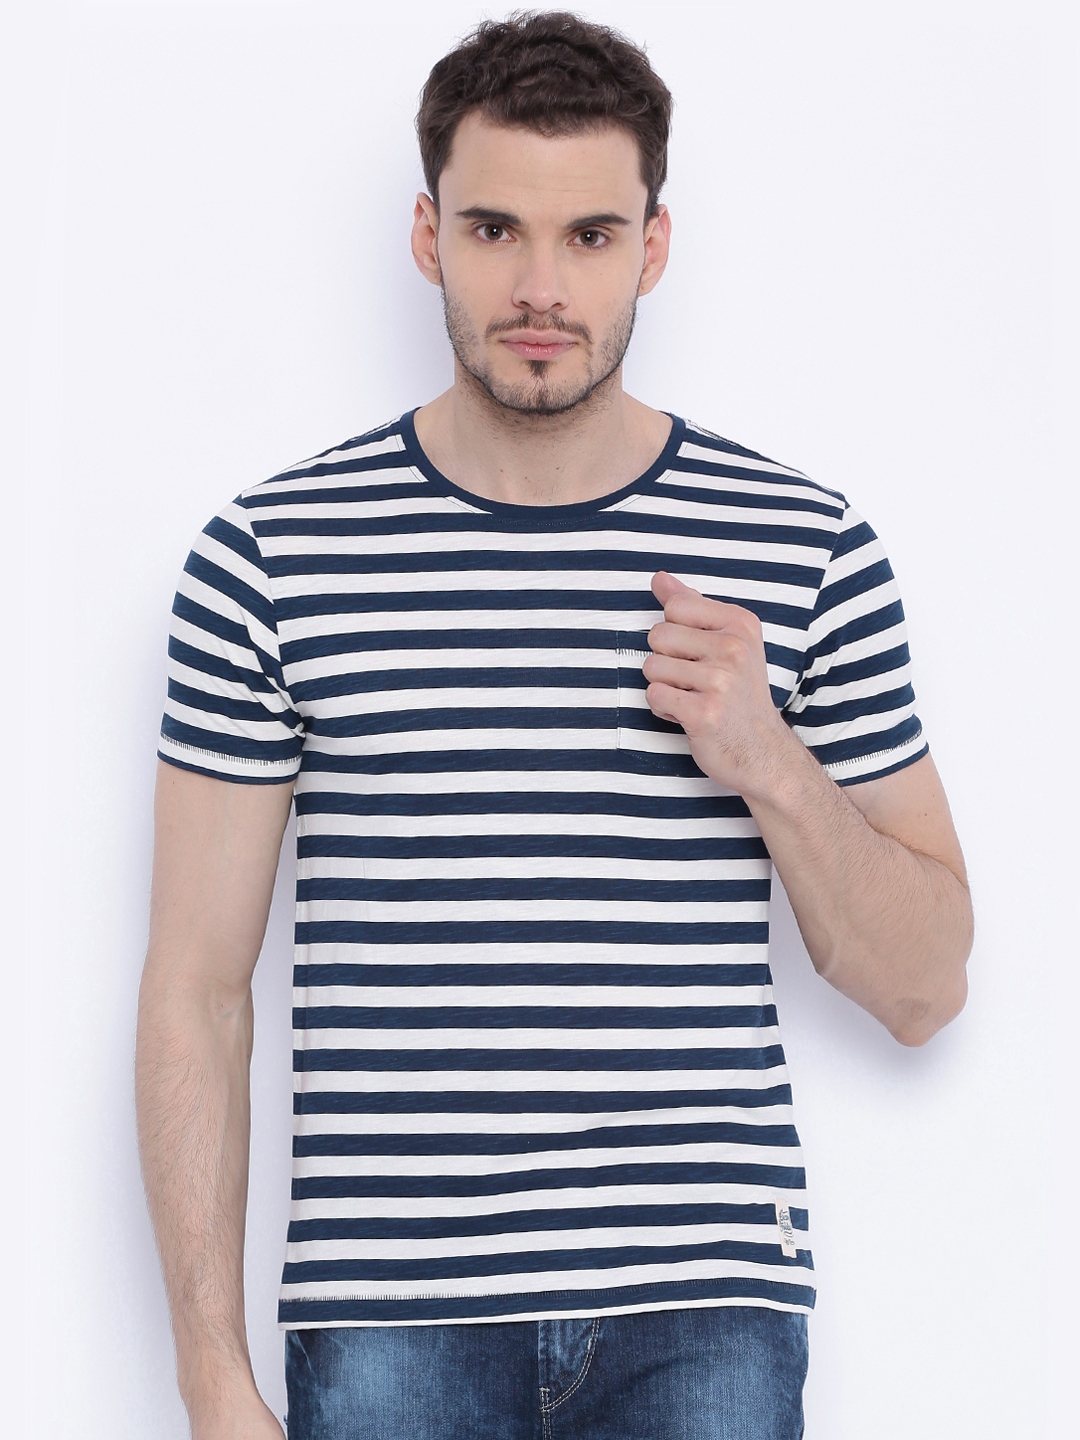 Men's Striped Bass Short Sleeve Cotton T-Shirt Large / Navy